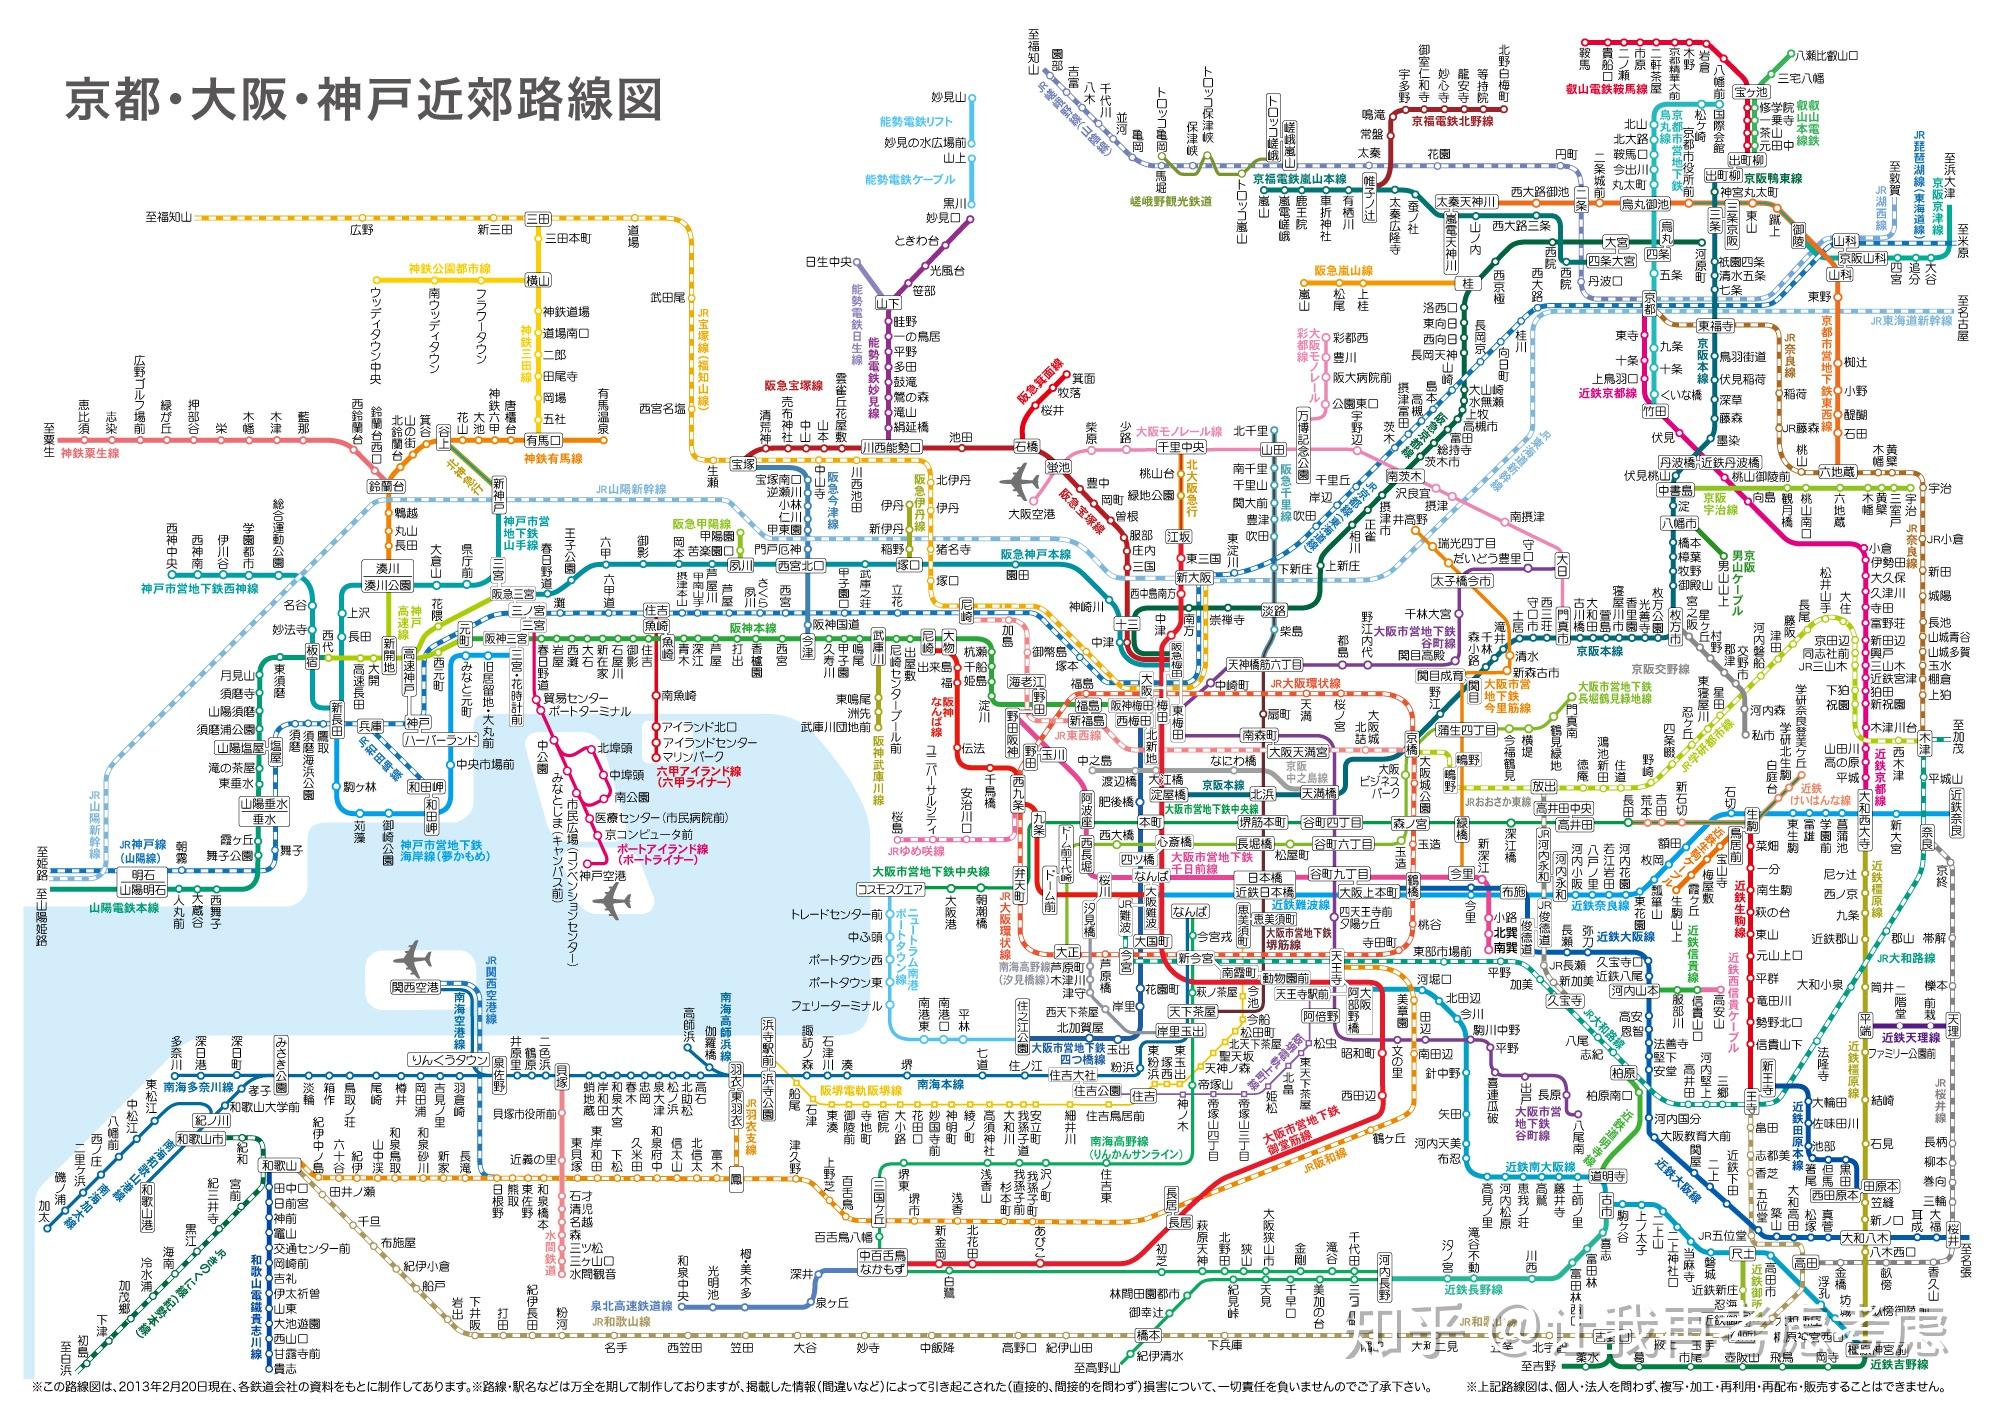 路线、站信息 | 东京地铁线